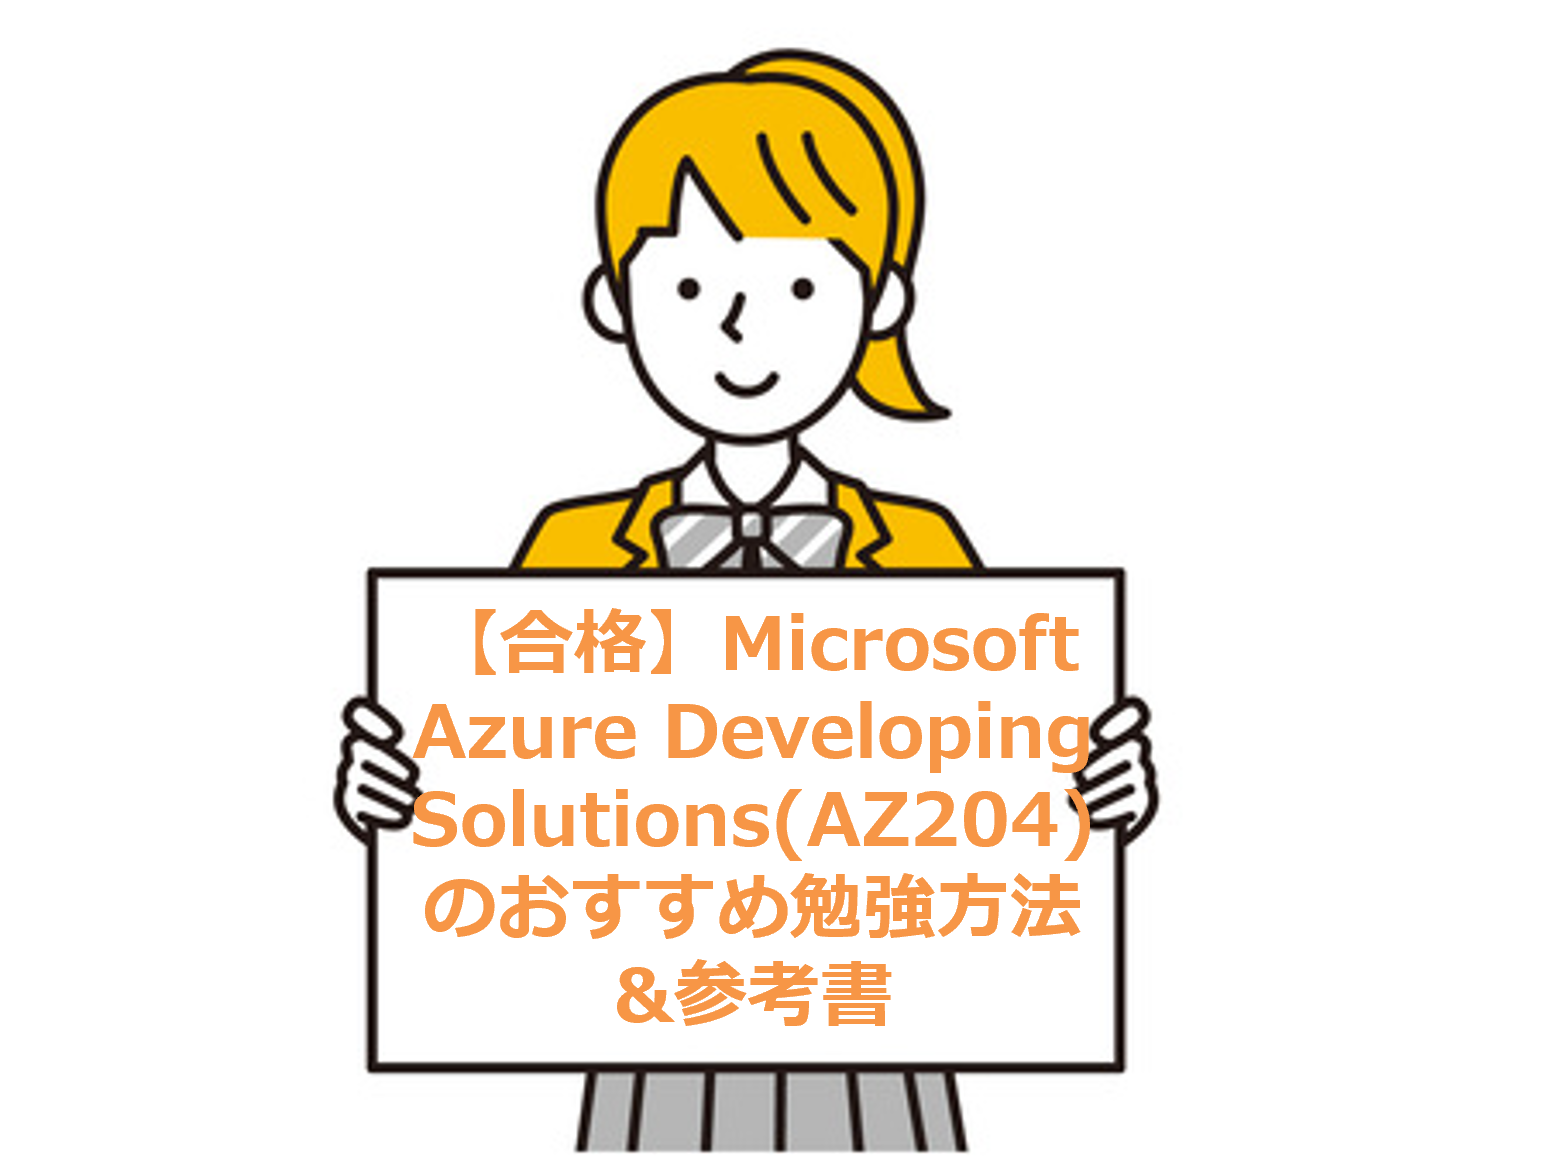 【合格】Microsoft Azure Developing Solutions(AZ204)のおすすめ勉強方法&参考書